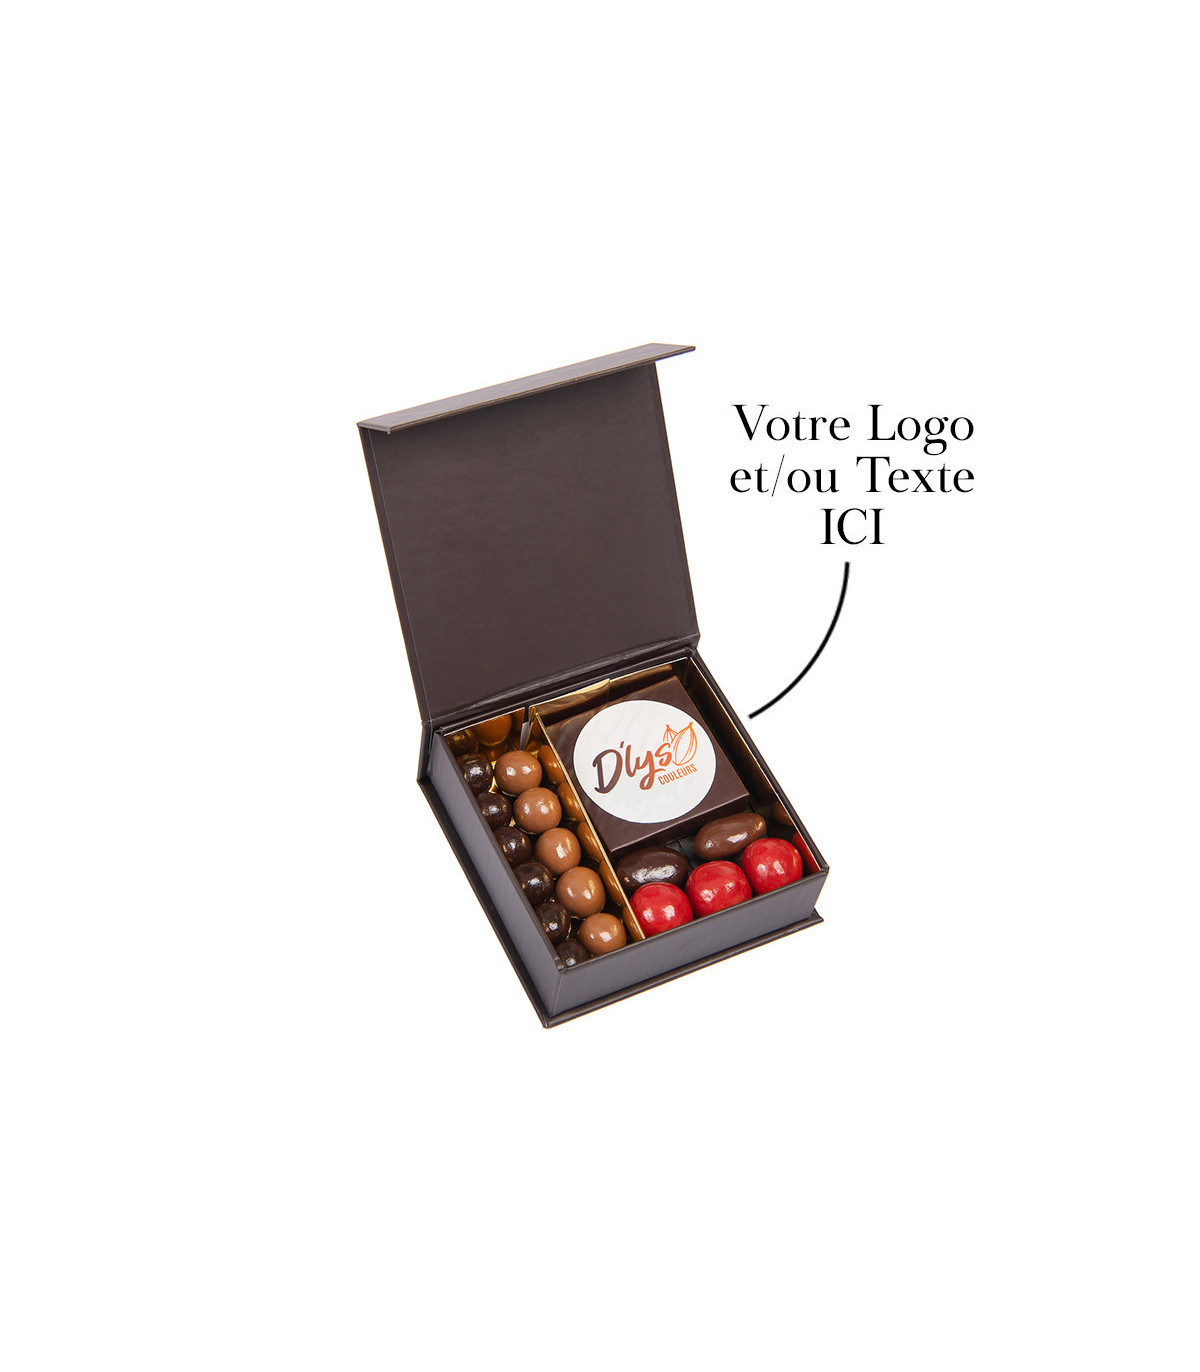 Boite de chocolat personnalisé avec logo - Chocolat D'lys couleurs